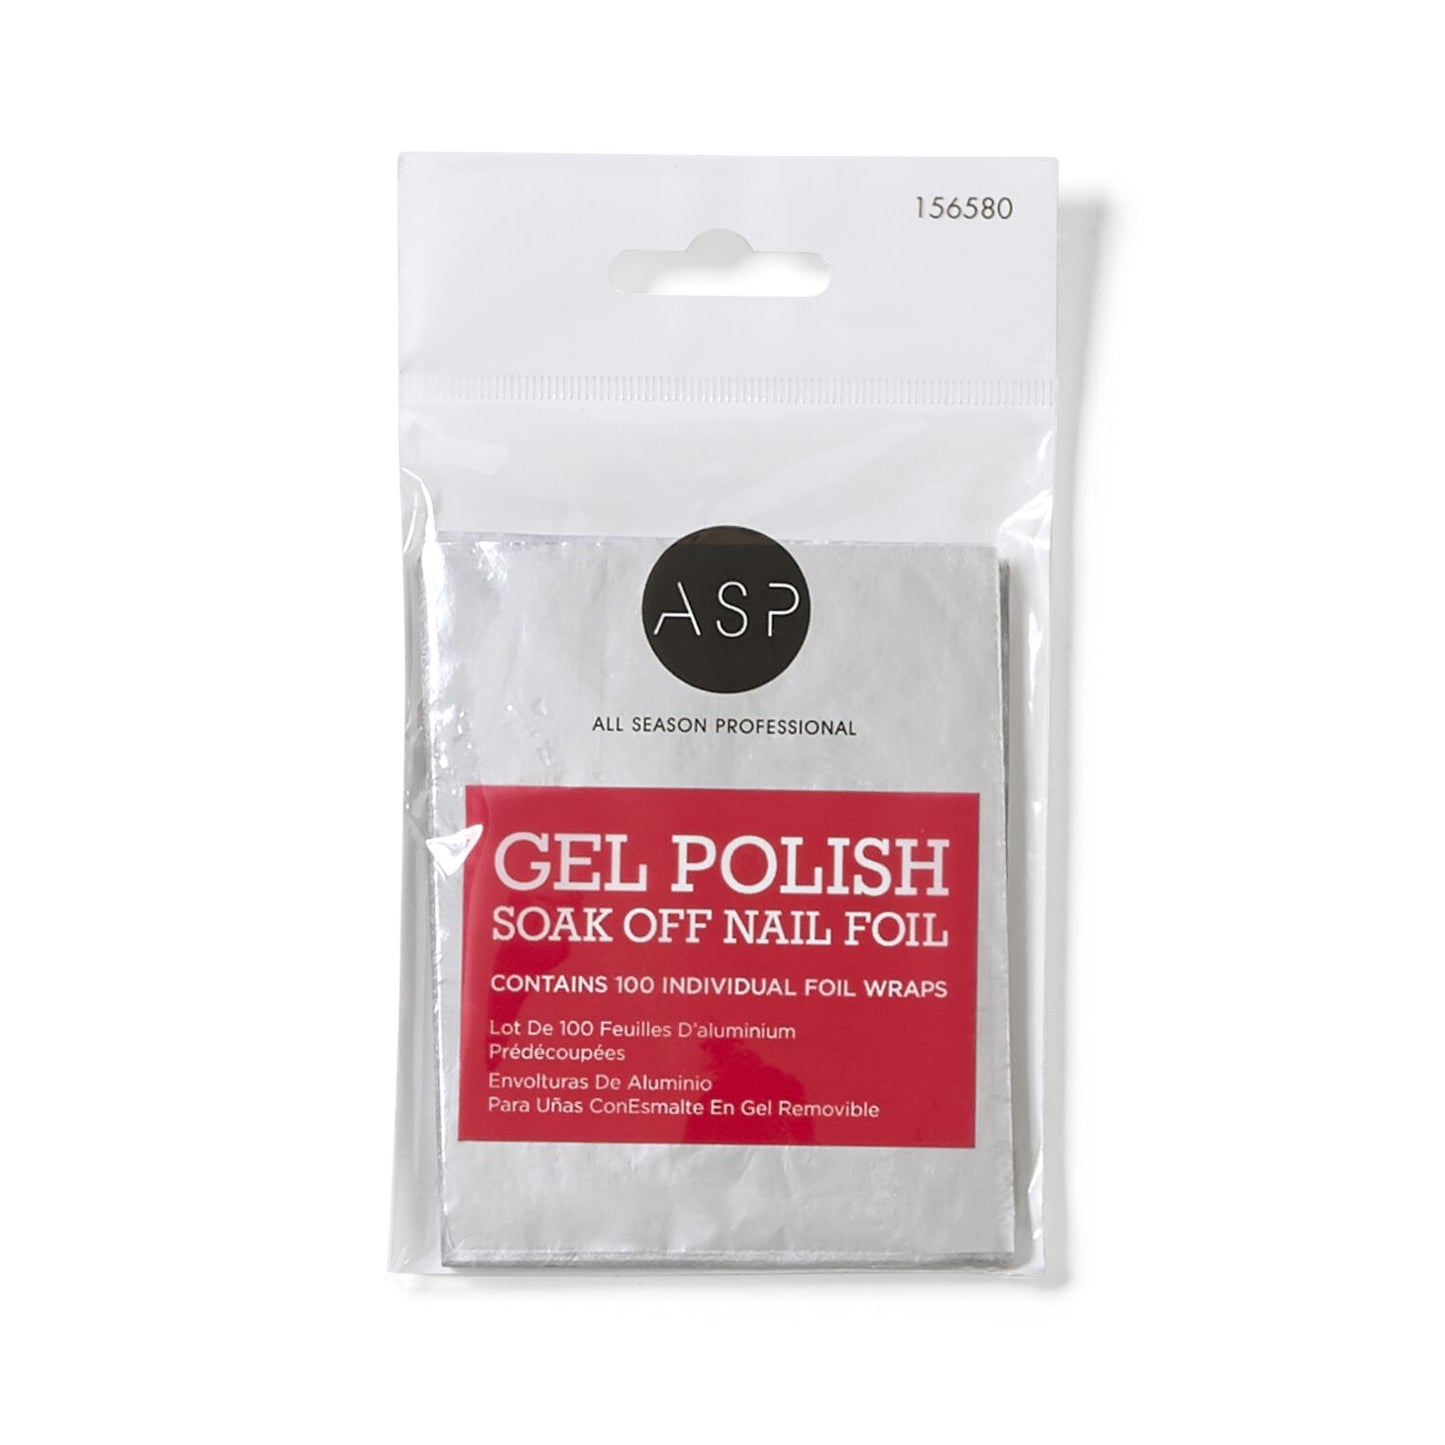 ASP Gel Polish Soak Off Nail Foils